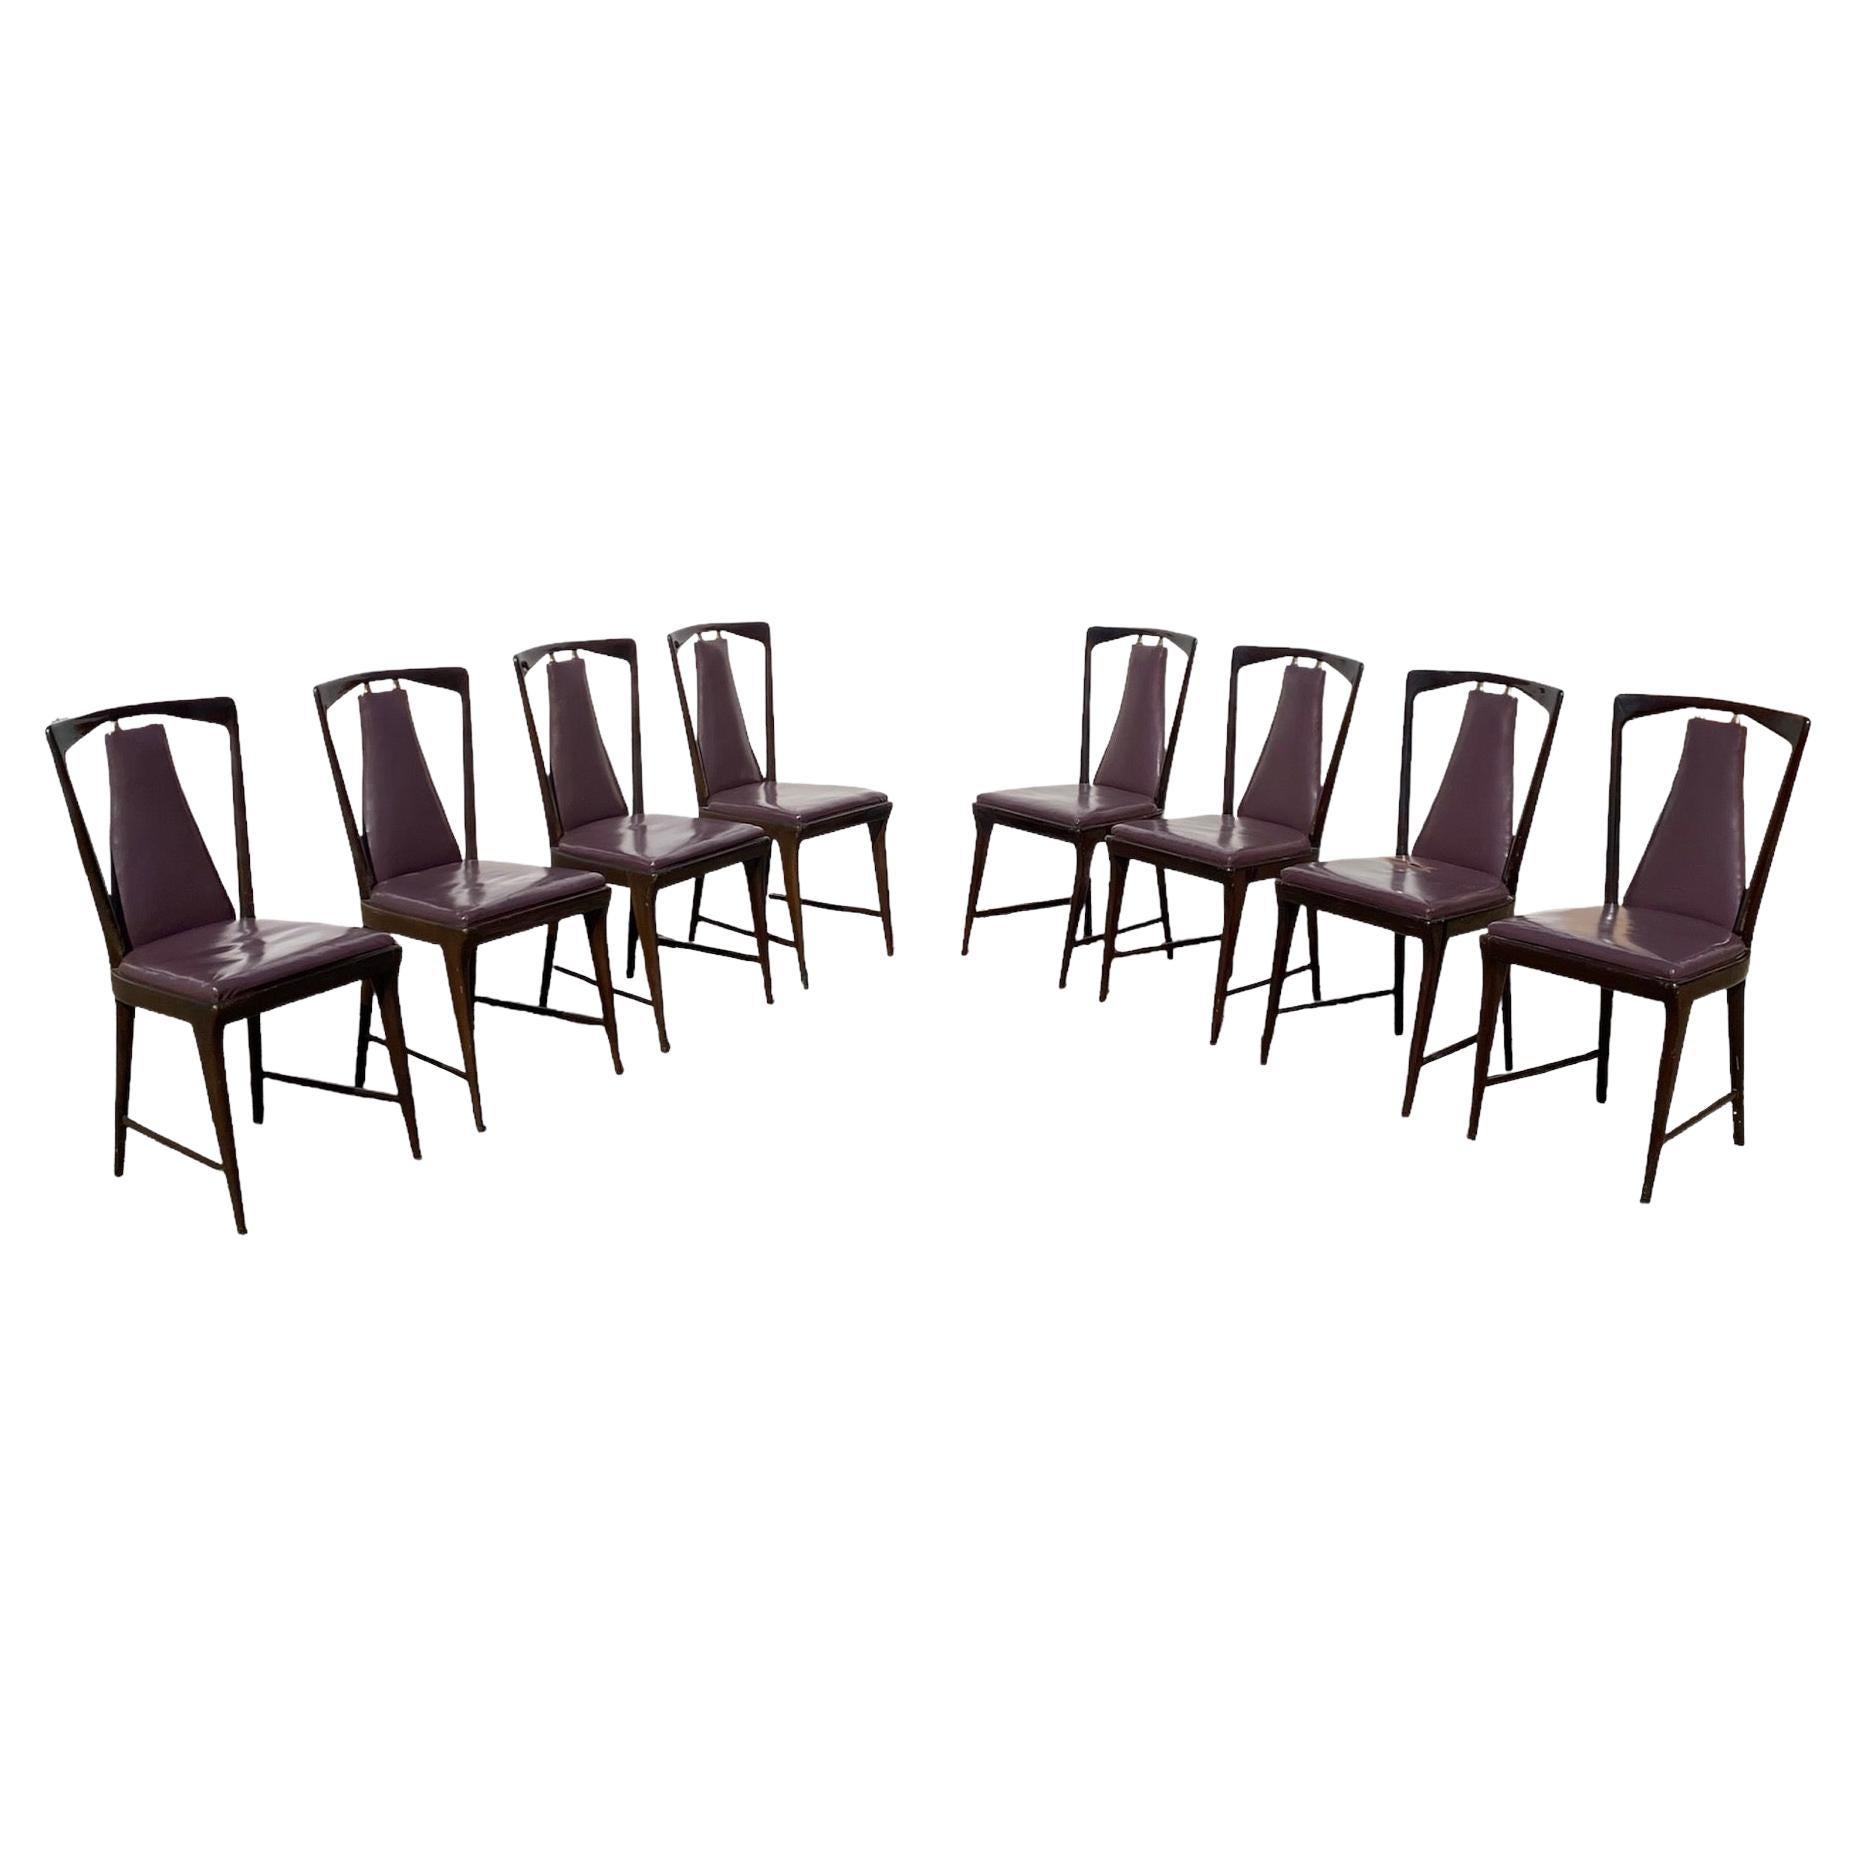 Set of 8 Dining Chairs Designed by Osvaldo Borsani for Atelier Borsani Varedo